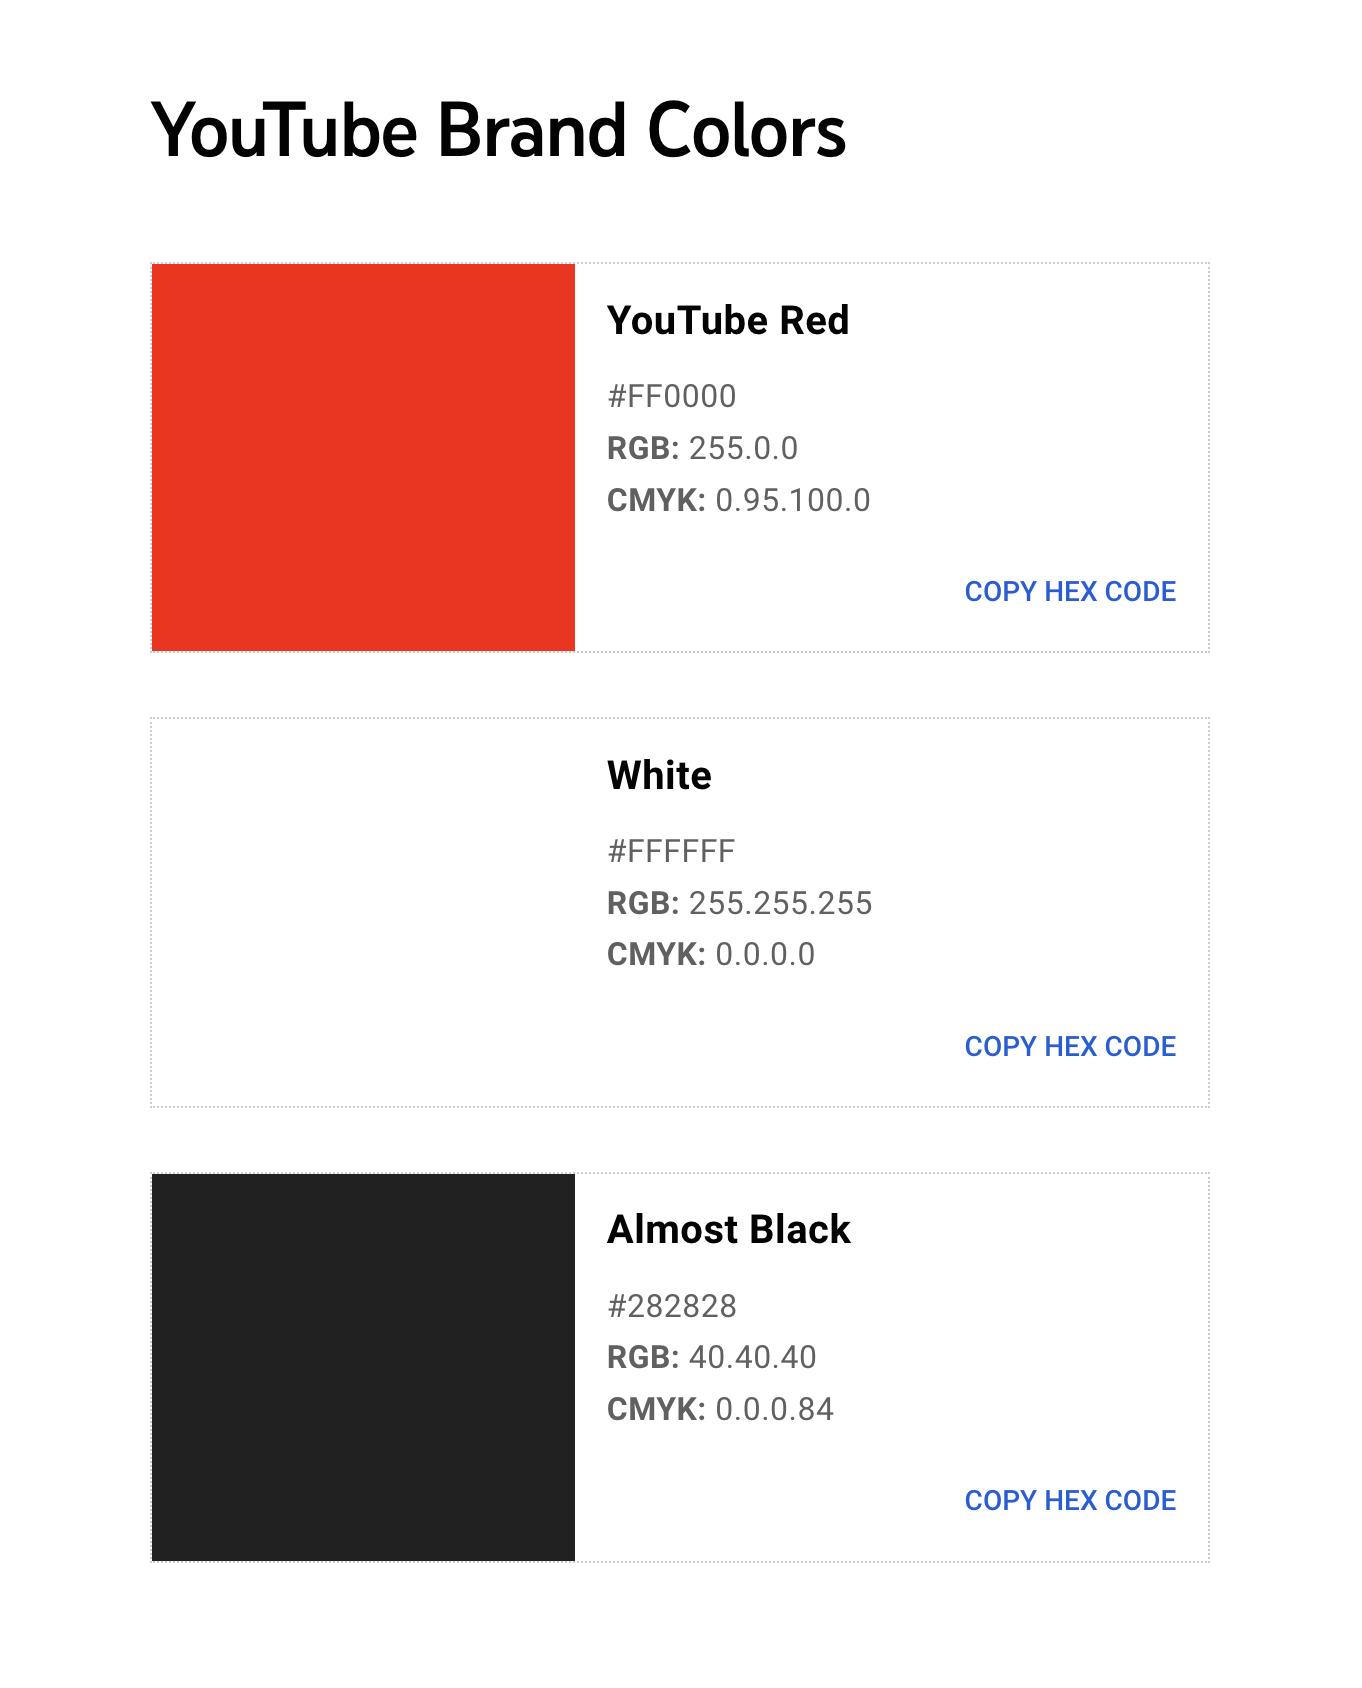 W style guide YouTube znajduje się sekcja z kolorami marki do używania na stronach internetowych.